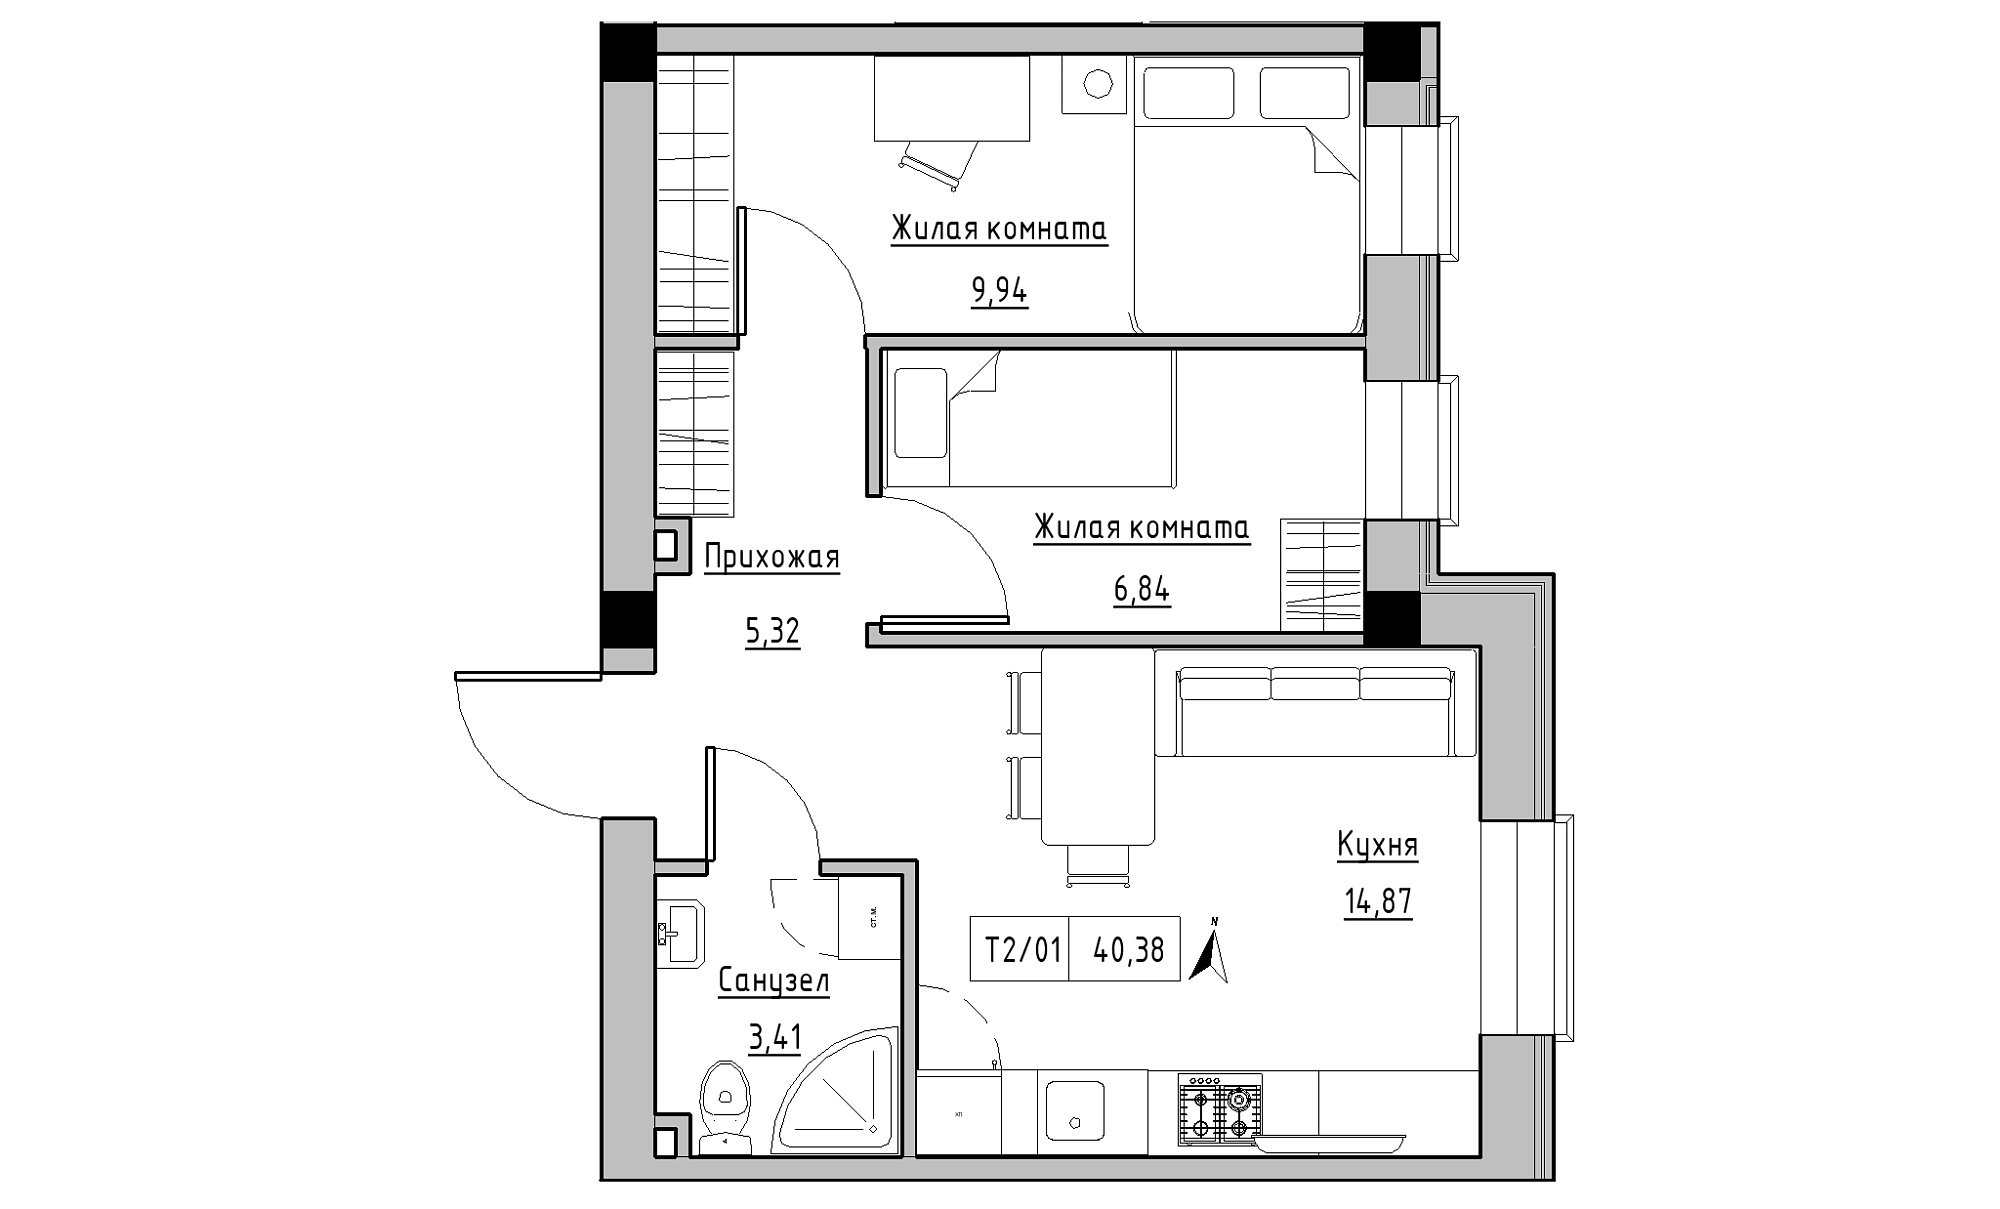 Планування 2-к квартира площею 40.38м2, KS-015-01/0006.